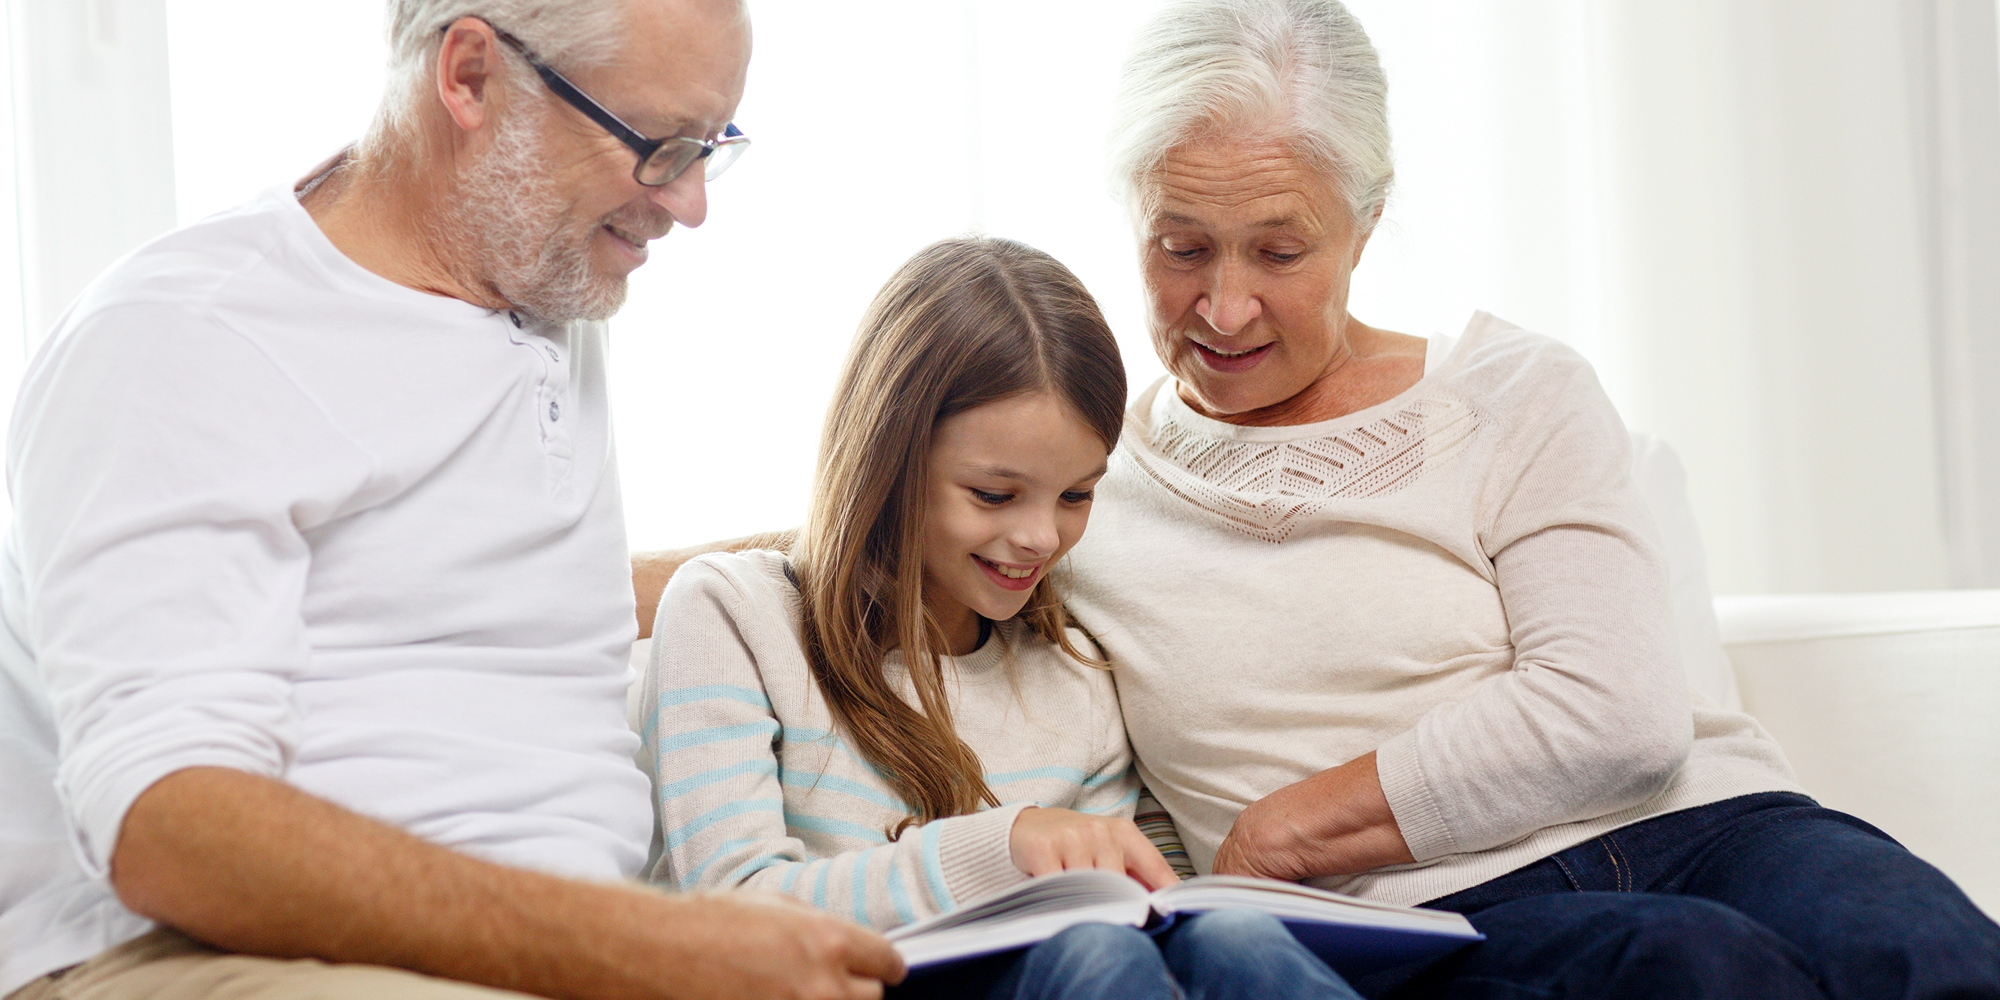 FOF Sønderjylland Lær at lave din egen fotobog bedsteforældre i sofa med barnebarn og bog